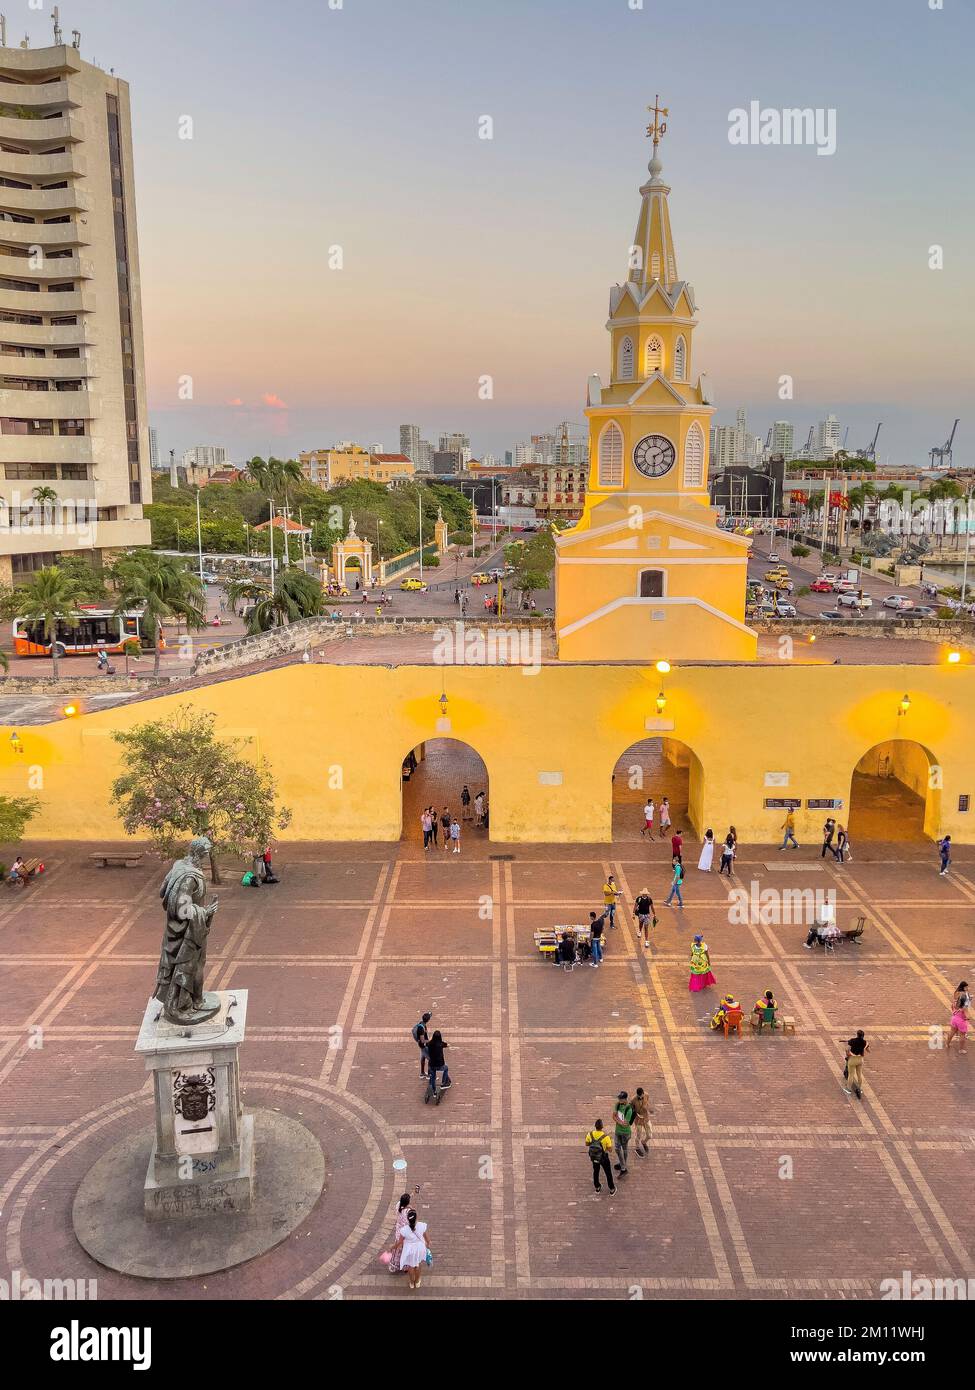 South America, Colombia, Departamento de Bolívar, Cartagena de Indias, Ciudad Amurallada, View over the Plaza de los Coches to the Torre del Reloj Stock Photo